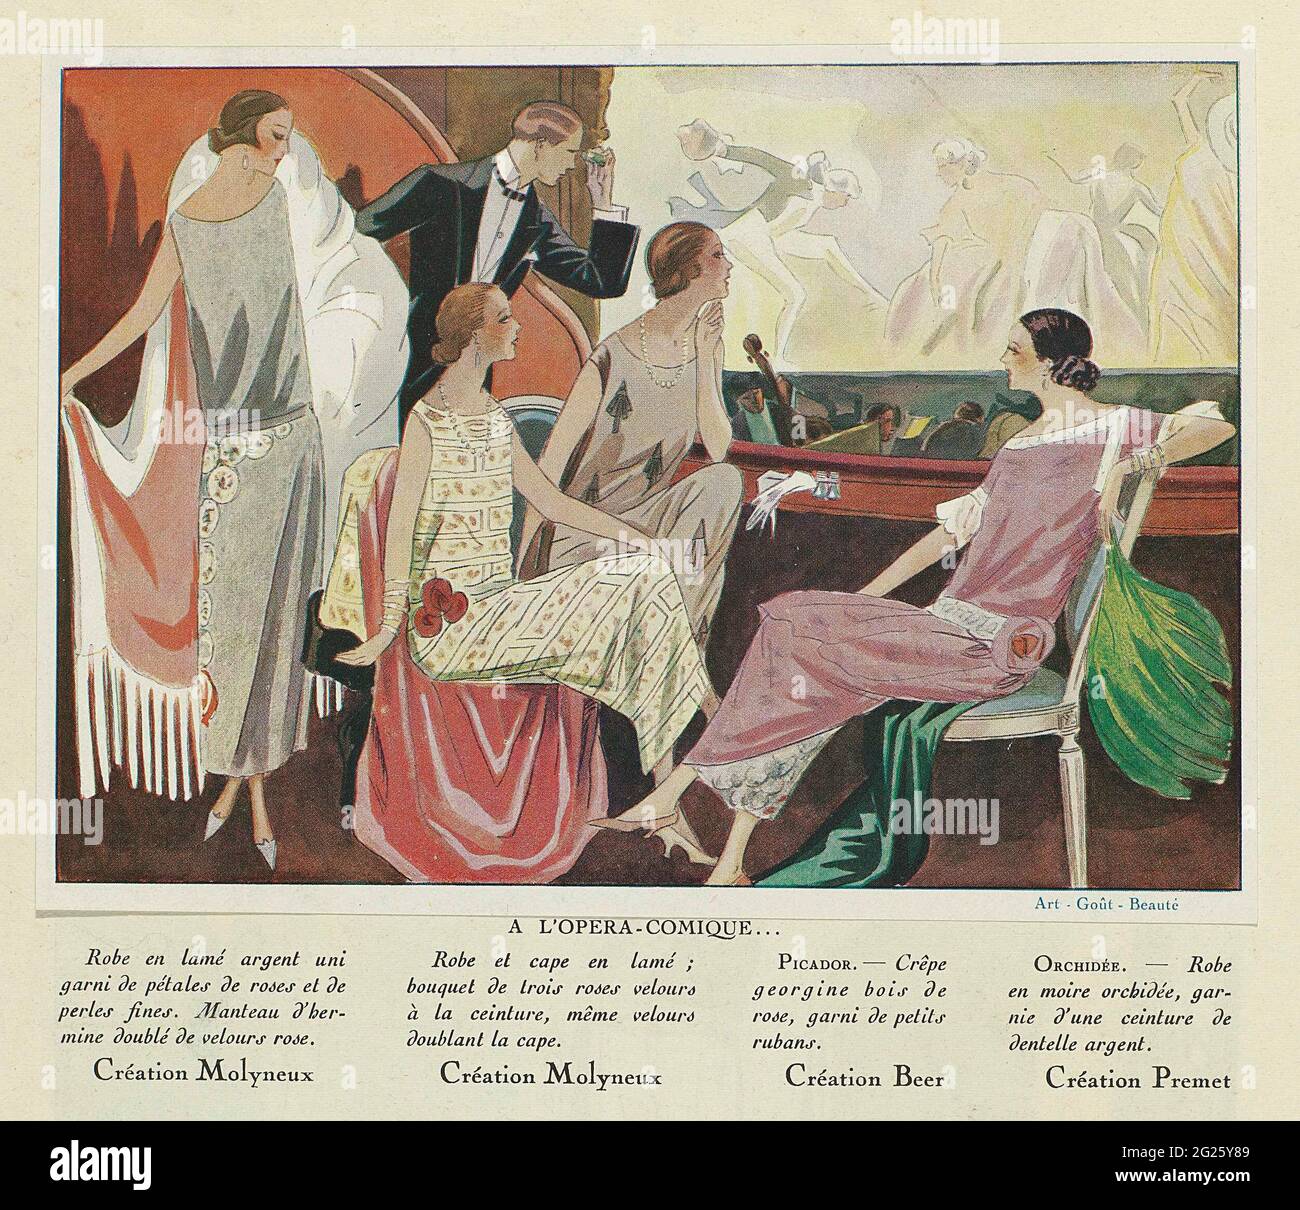 Art - Goût - Beauté, Feuillets de l 'Élégance Féminine, Janvier 1924, No.  41, 4th Année, p. 16: A L'Opéra-Comique. View of the stage and orchestra  van de Opera-Comique. Four women in